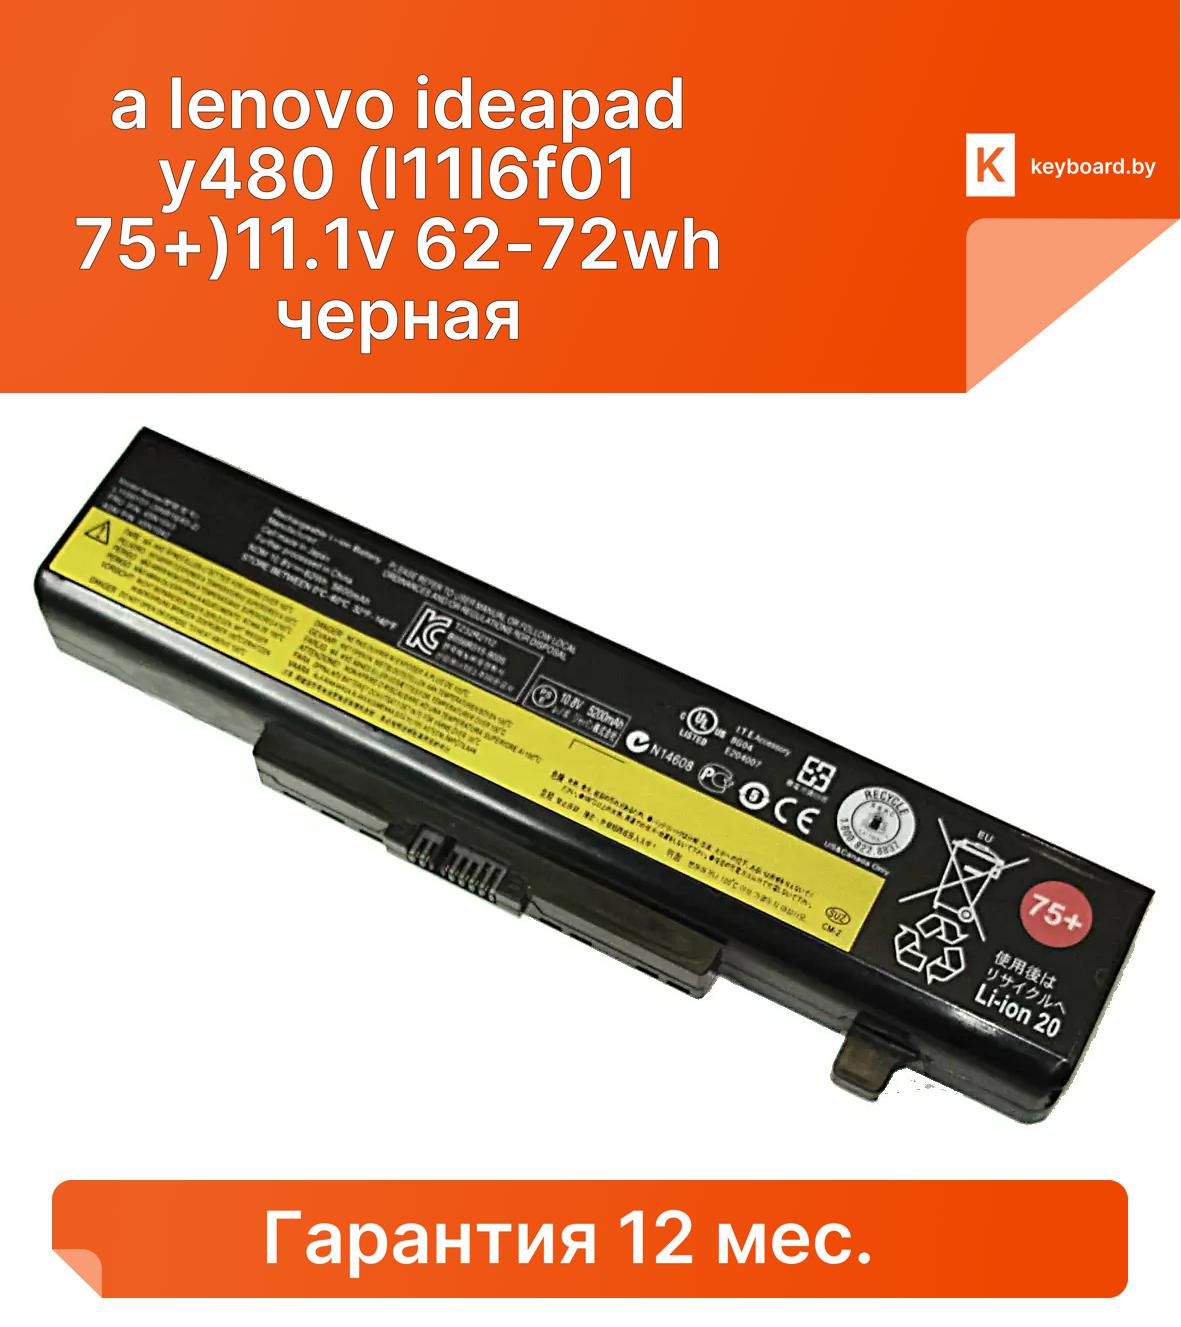 Аккумуляторная батарея для ноутбукa lenovo ideapad y480 (l11l6f01 75+)11.1v 62-72wh черная